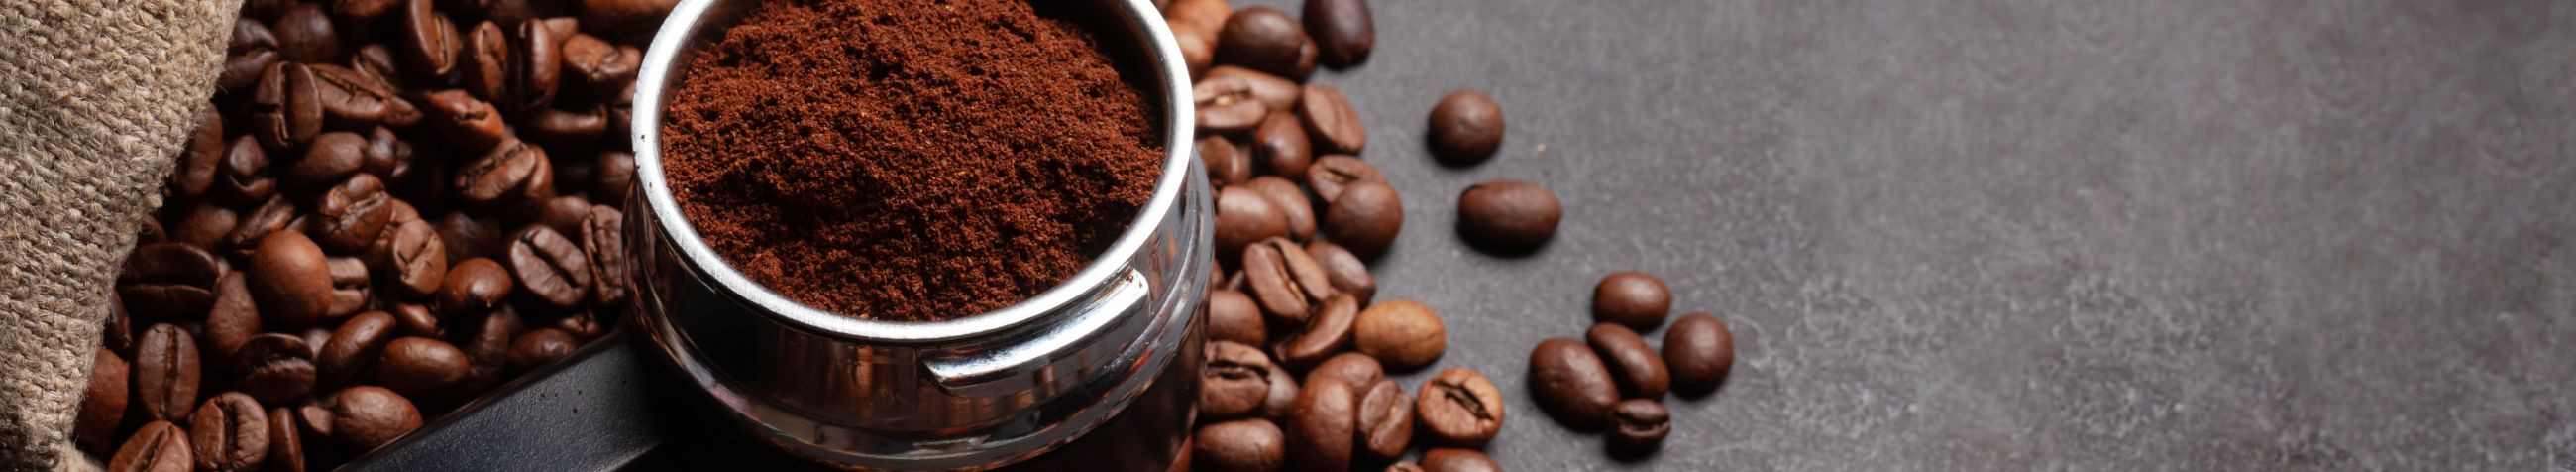 Ettevõte Joogiekspert OÜ pakub kvaliteetset kohviteenust ja müüb/rendib kohvimasinaid ja joogiautomaate